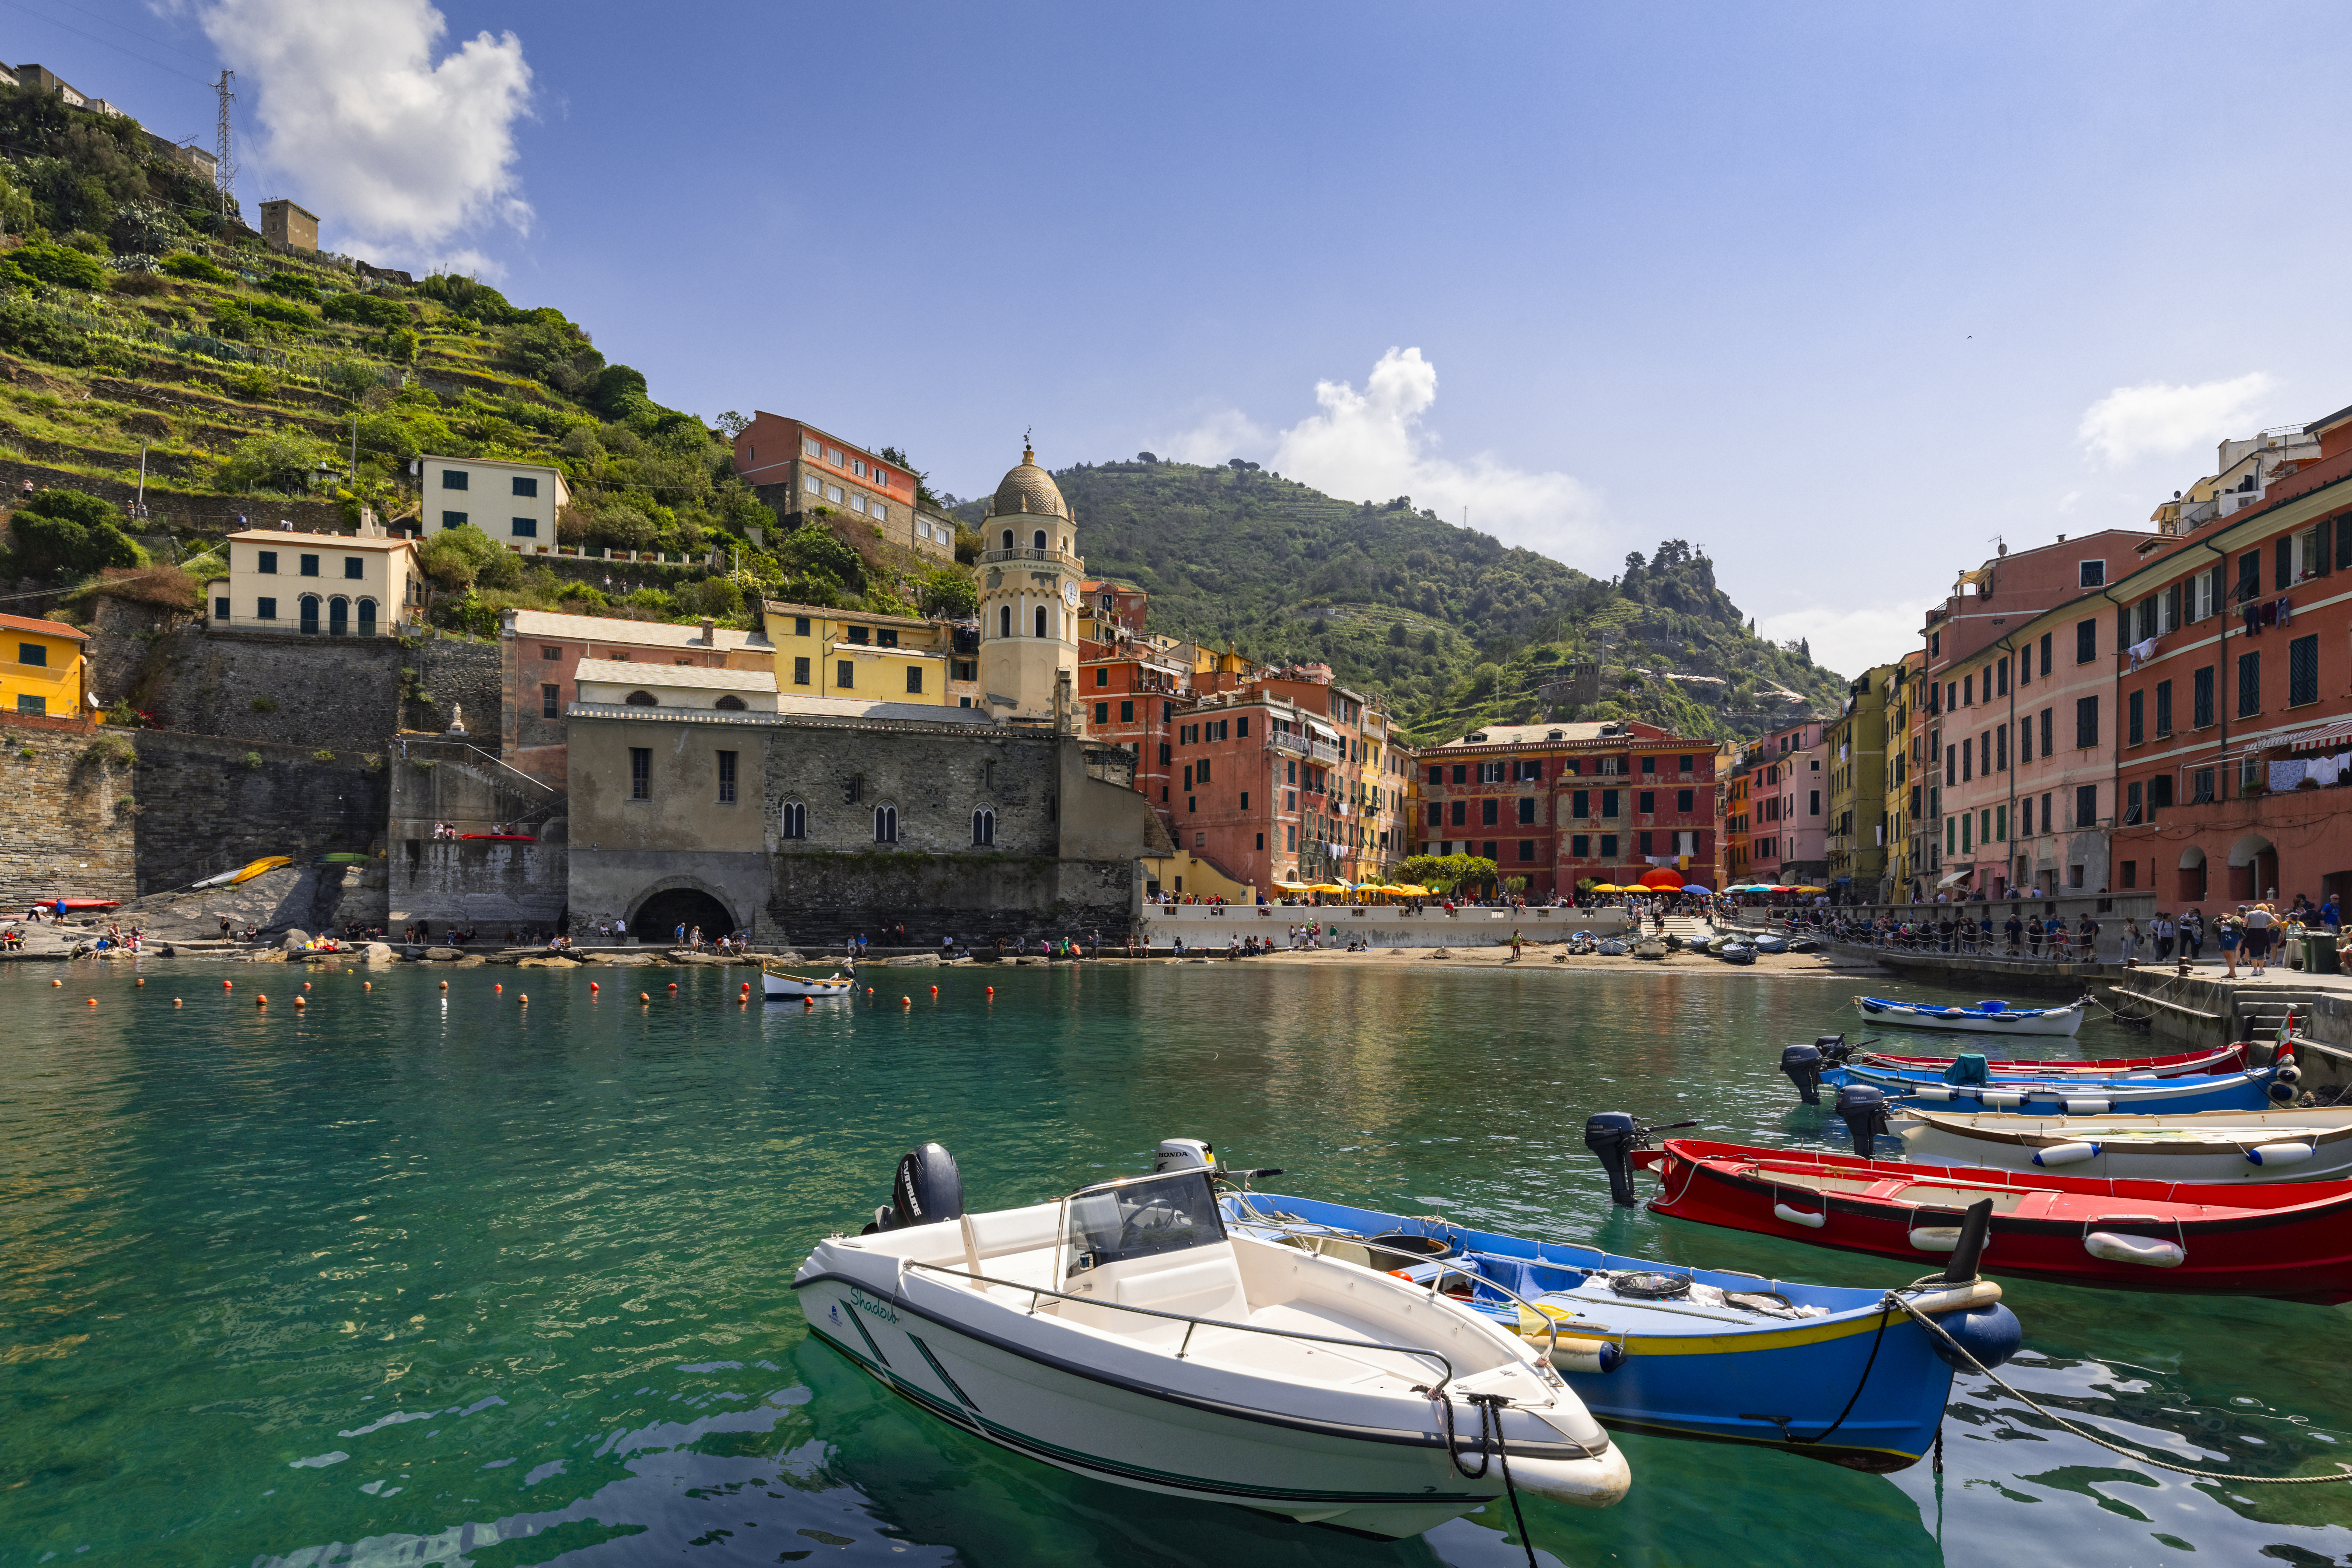 <p>Вернаца, Италия</p>

<p>Всички сгради от тази част на италианската ривиера привличат туристите с топлите си цветове. Лесно бихте се заблудили, че преди рибарите са ги боядисали така, за да ги различават от морето, но по-скоро това е решение, повлияно от туризма през 70-те години.</p>